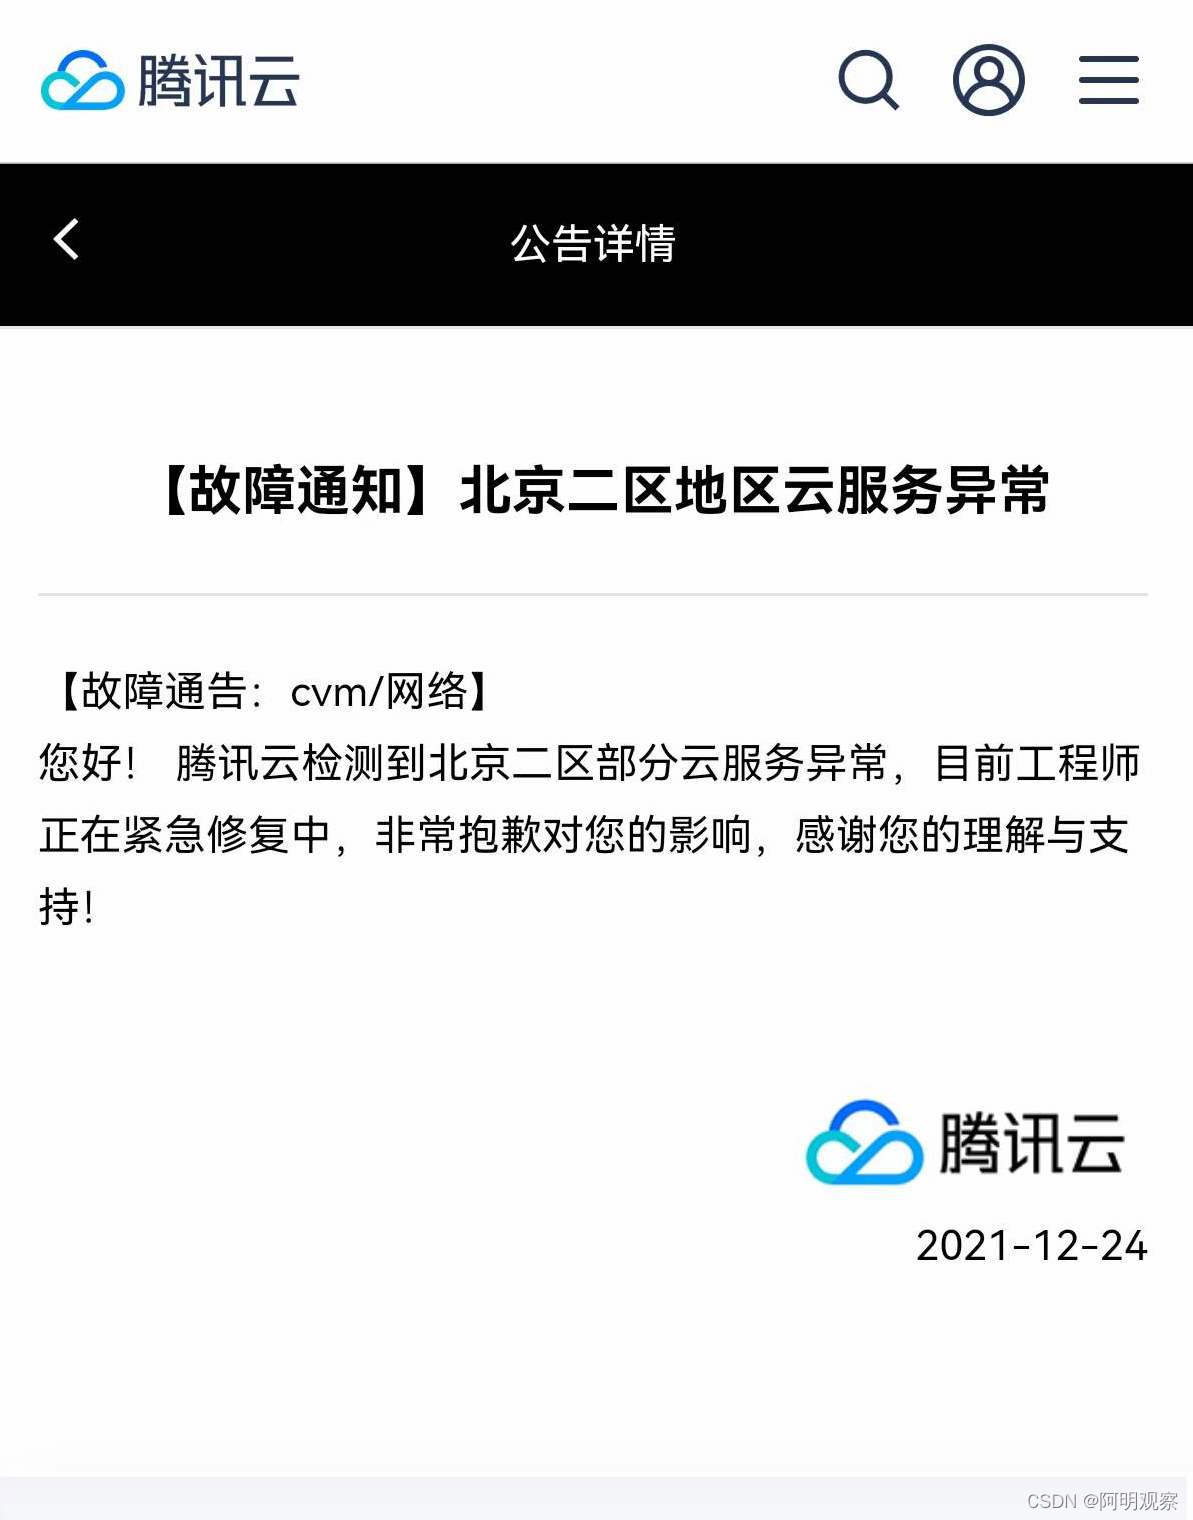 「全球云观察 | 每日看点」腾讯云北京二区地区云服务出现故障